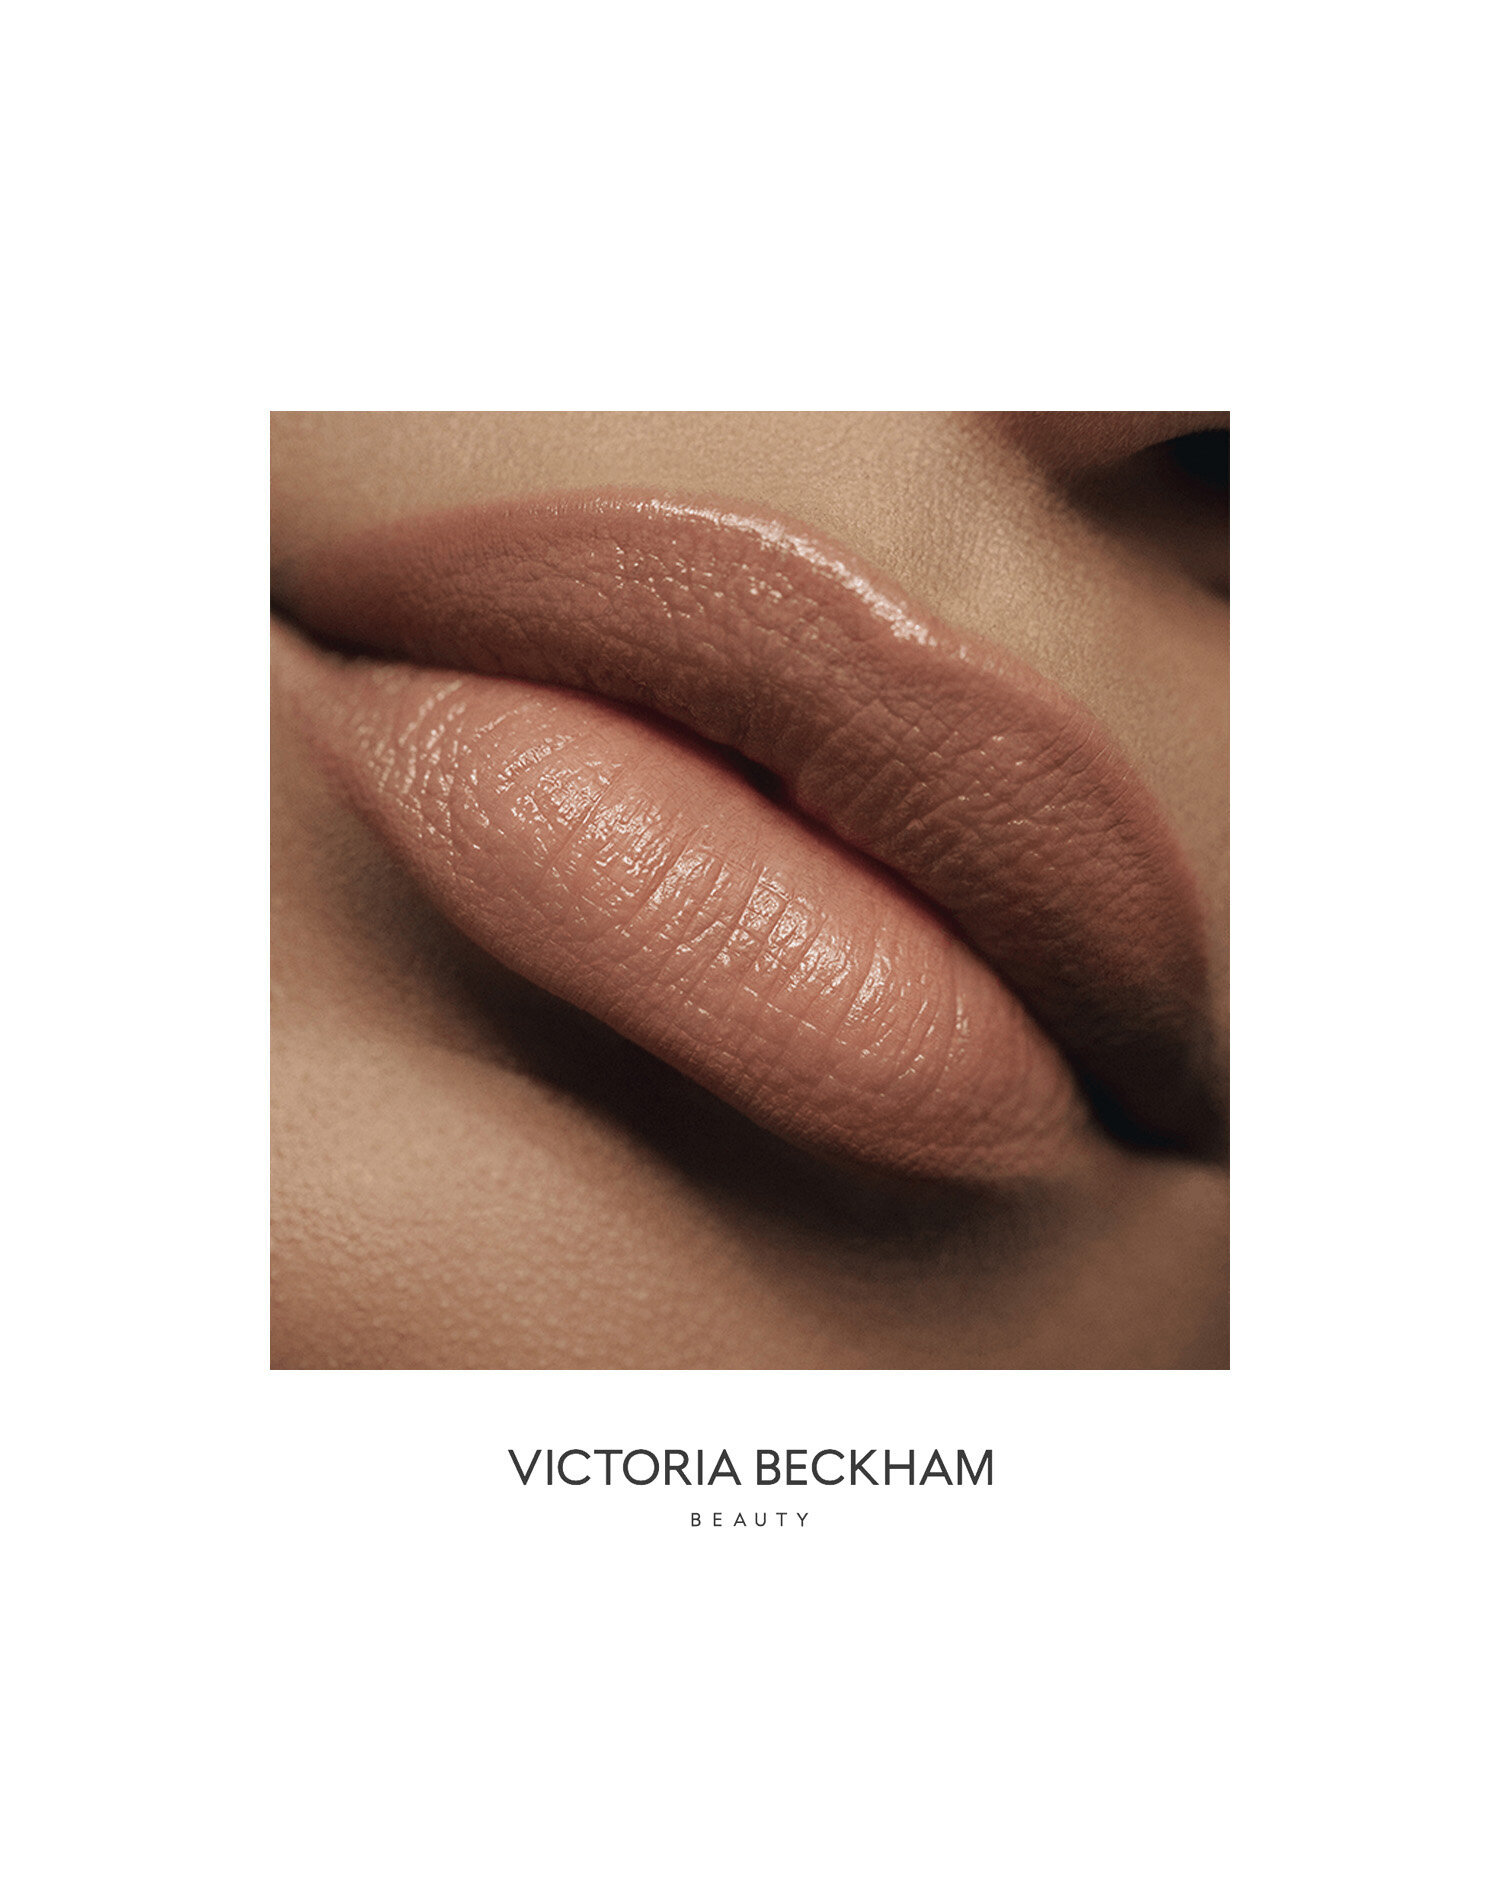  Victoria Beckham Beauty 